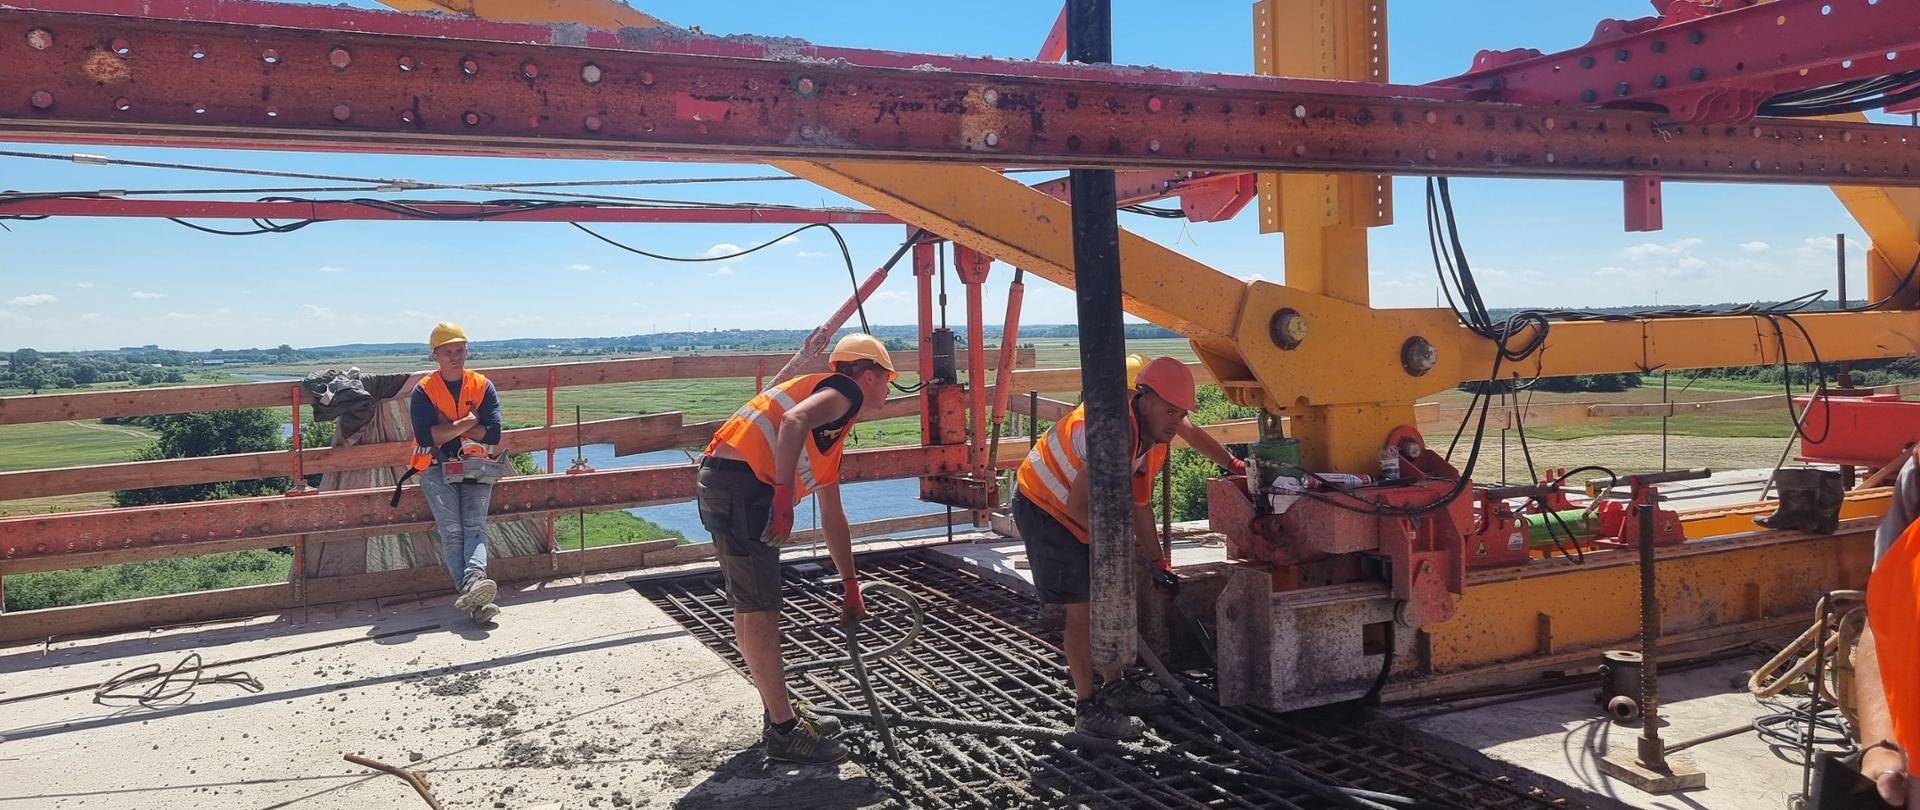 pracownicy budowlani w kaskach i pomarańczowych kamizelkach betonują zazbrojone połączenie mostu nad Narwią. Pracownik dystybuuje beton przy pomocy pompy do betonu, drugi zagęszcza beton zagęszczarką buławową